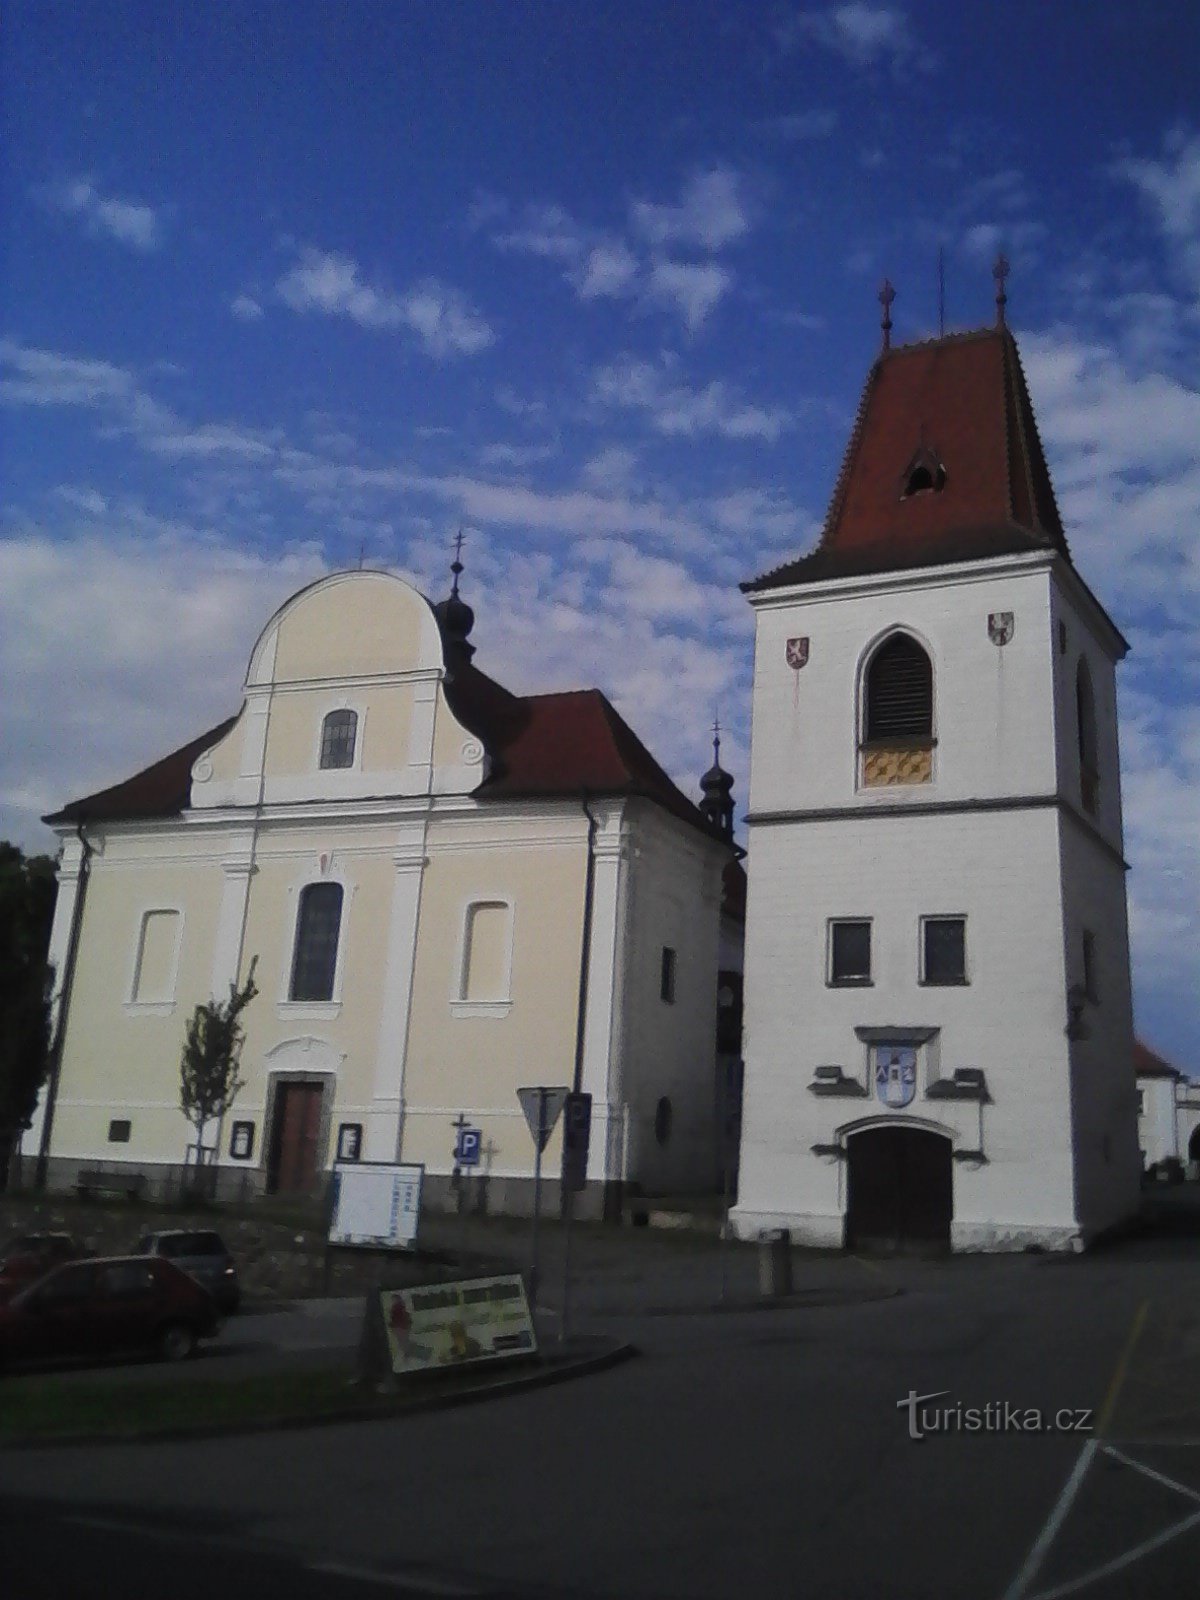 1. Zvonik in cerkev sv. Martina v Mladi Vožici